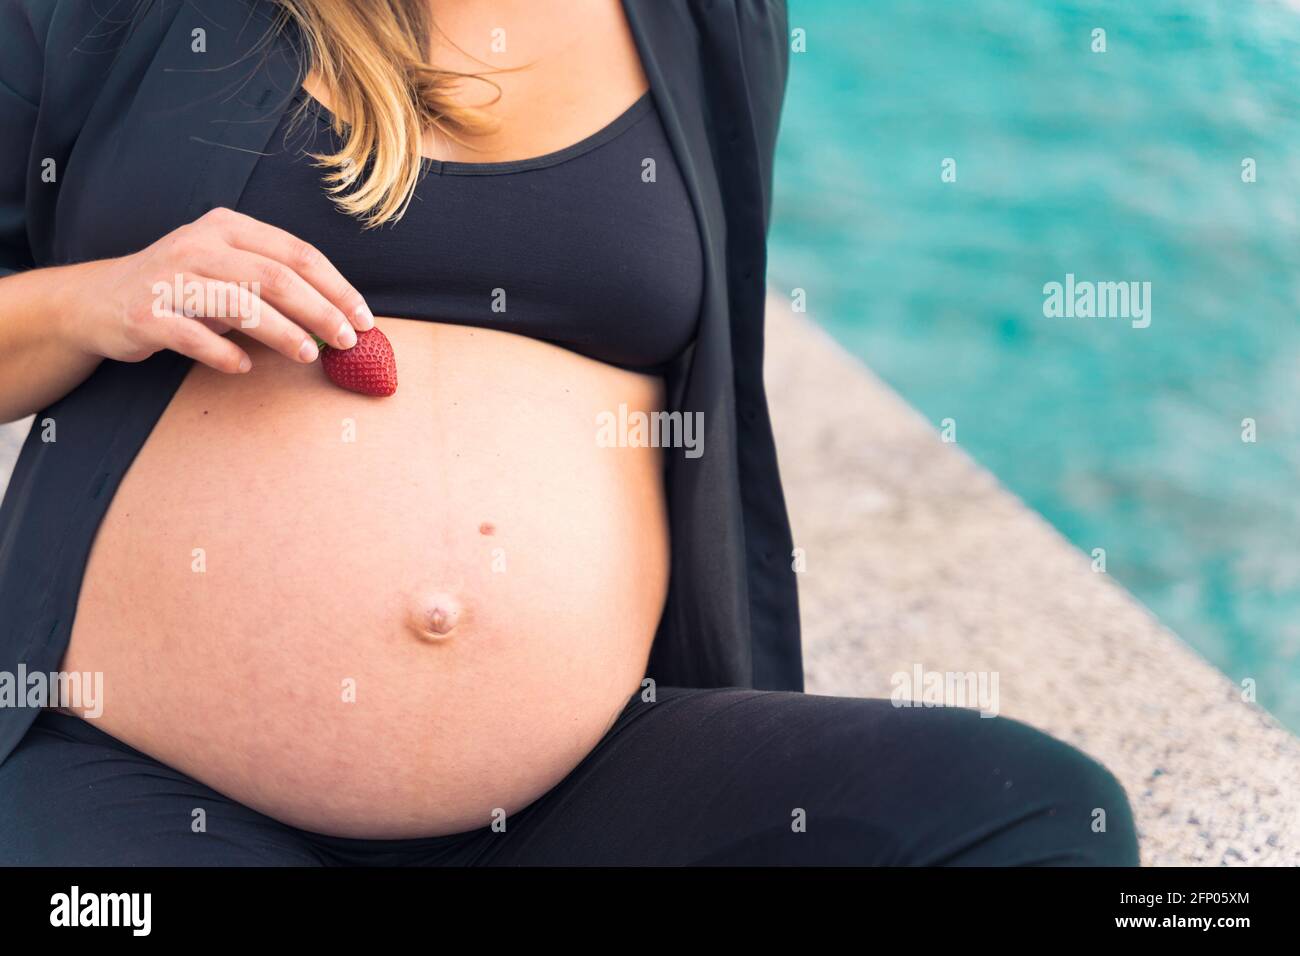 Une femme enceinte de sportswear tenant une fraise fraîche et délicieuse près de la mer. Copier l'espace. Berrys, l'alergie, le régime alimentaire et la nourriture saine concept. Banque D'Images